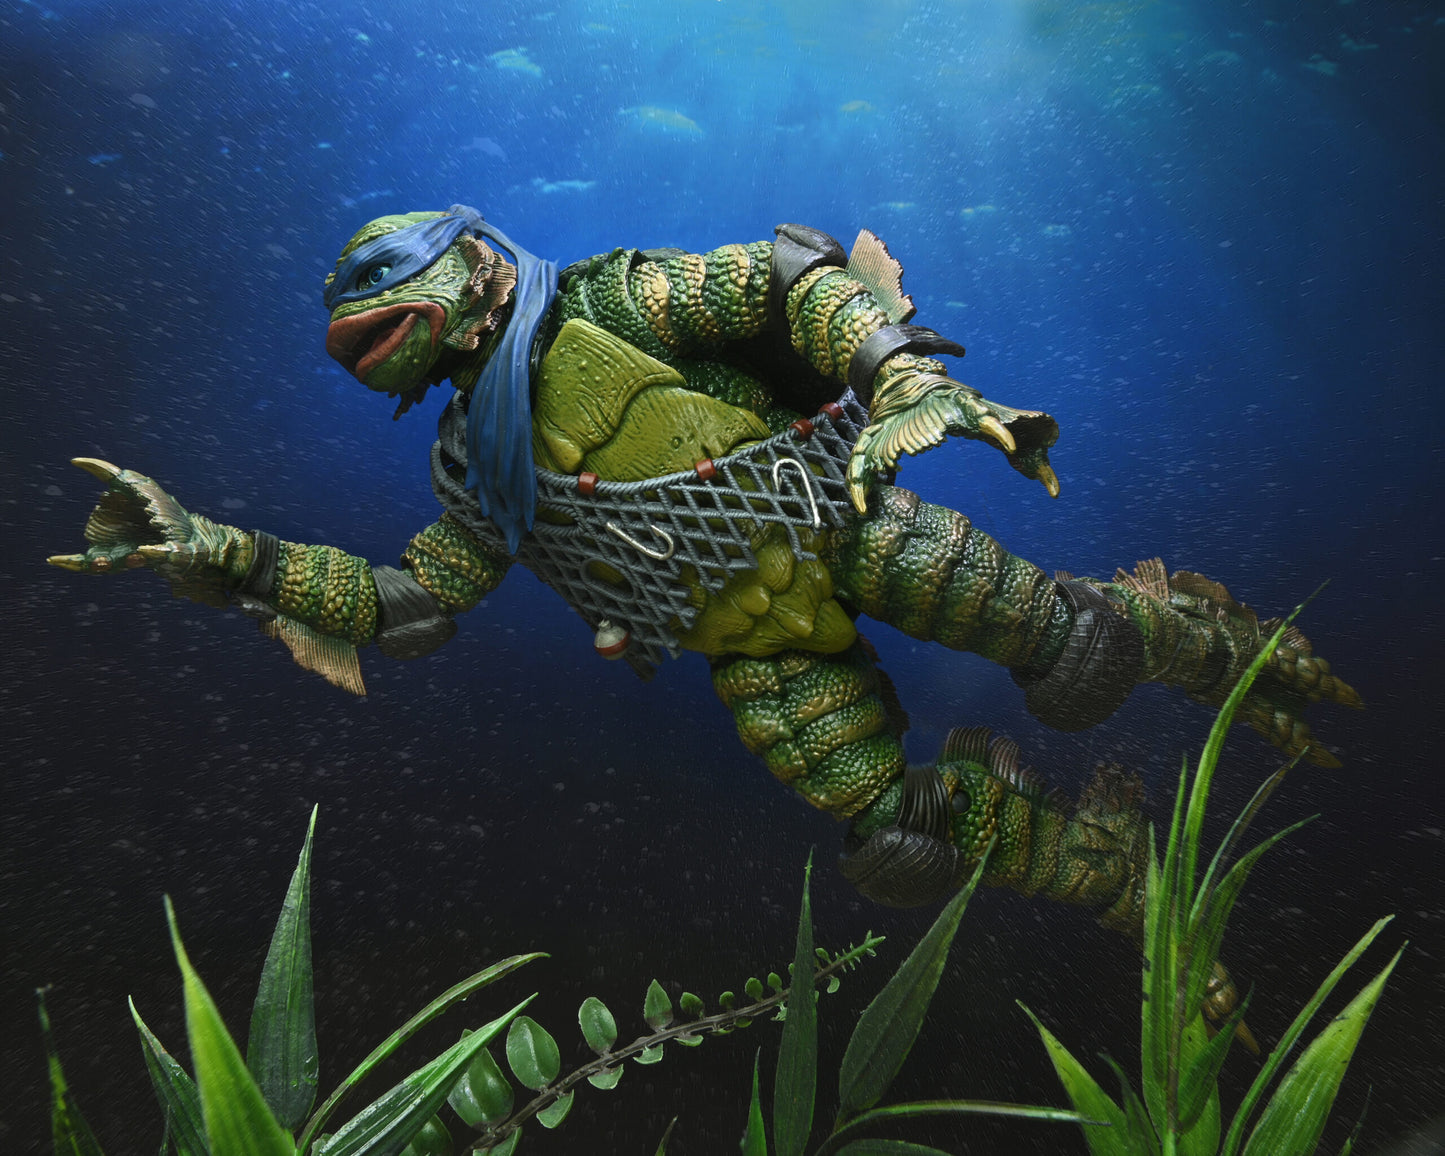 NECA - Universal Monsters/Teenage Mutant Ninja Turtle – Ultimate Leonardo as the Creature